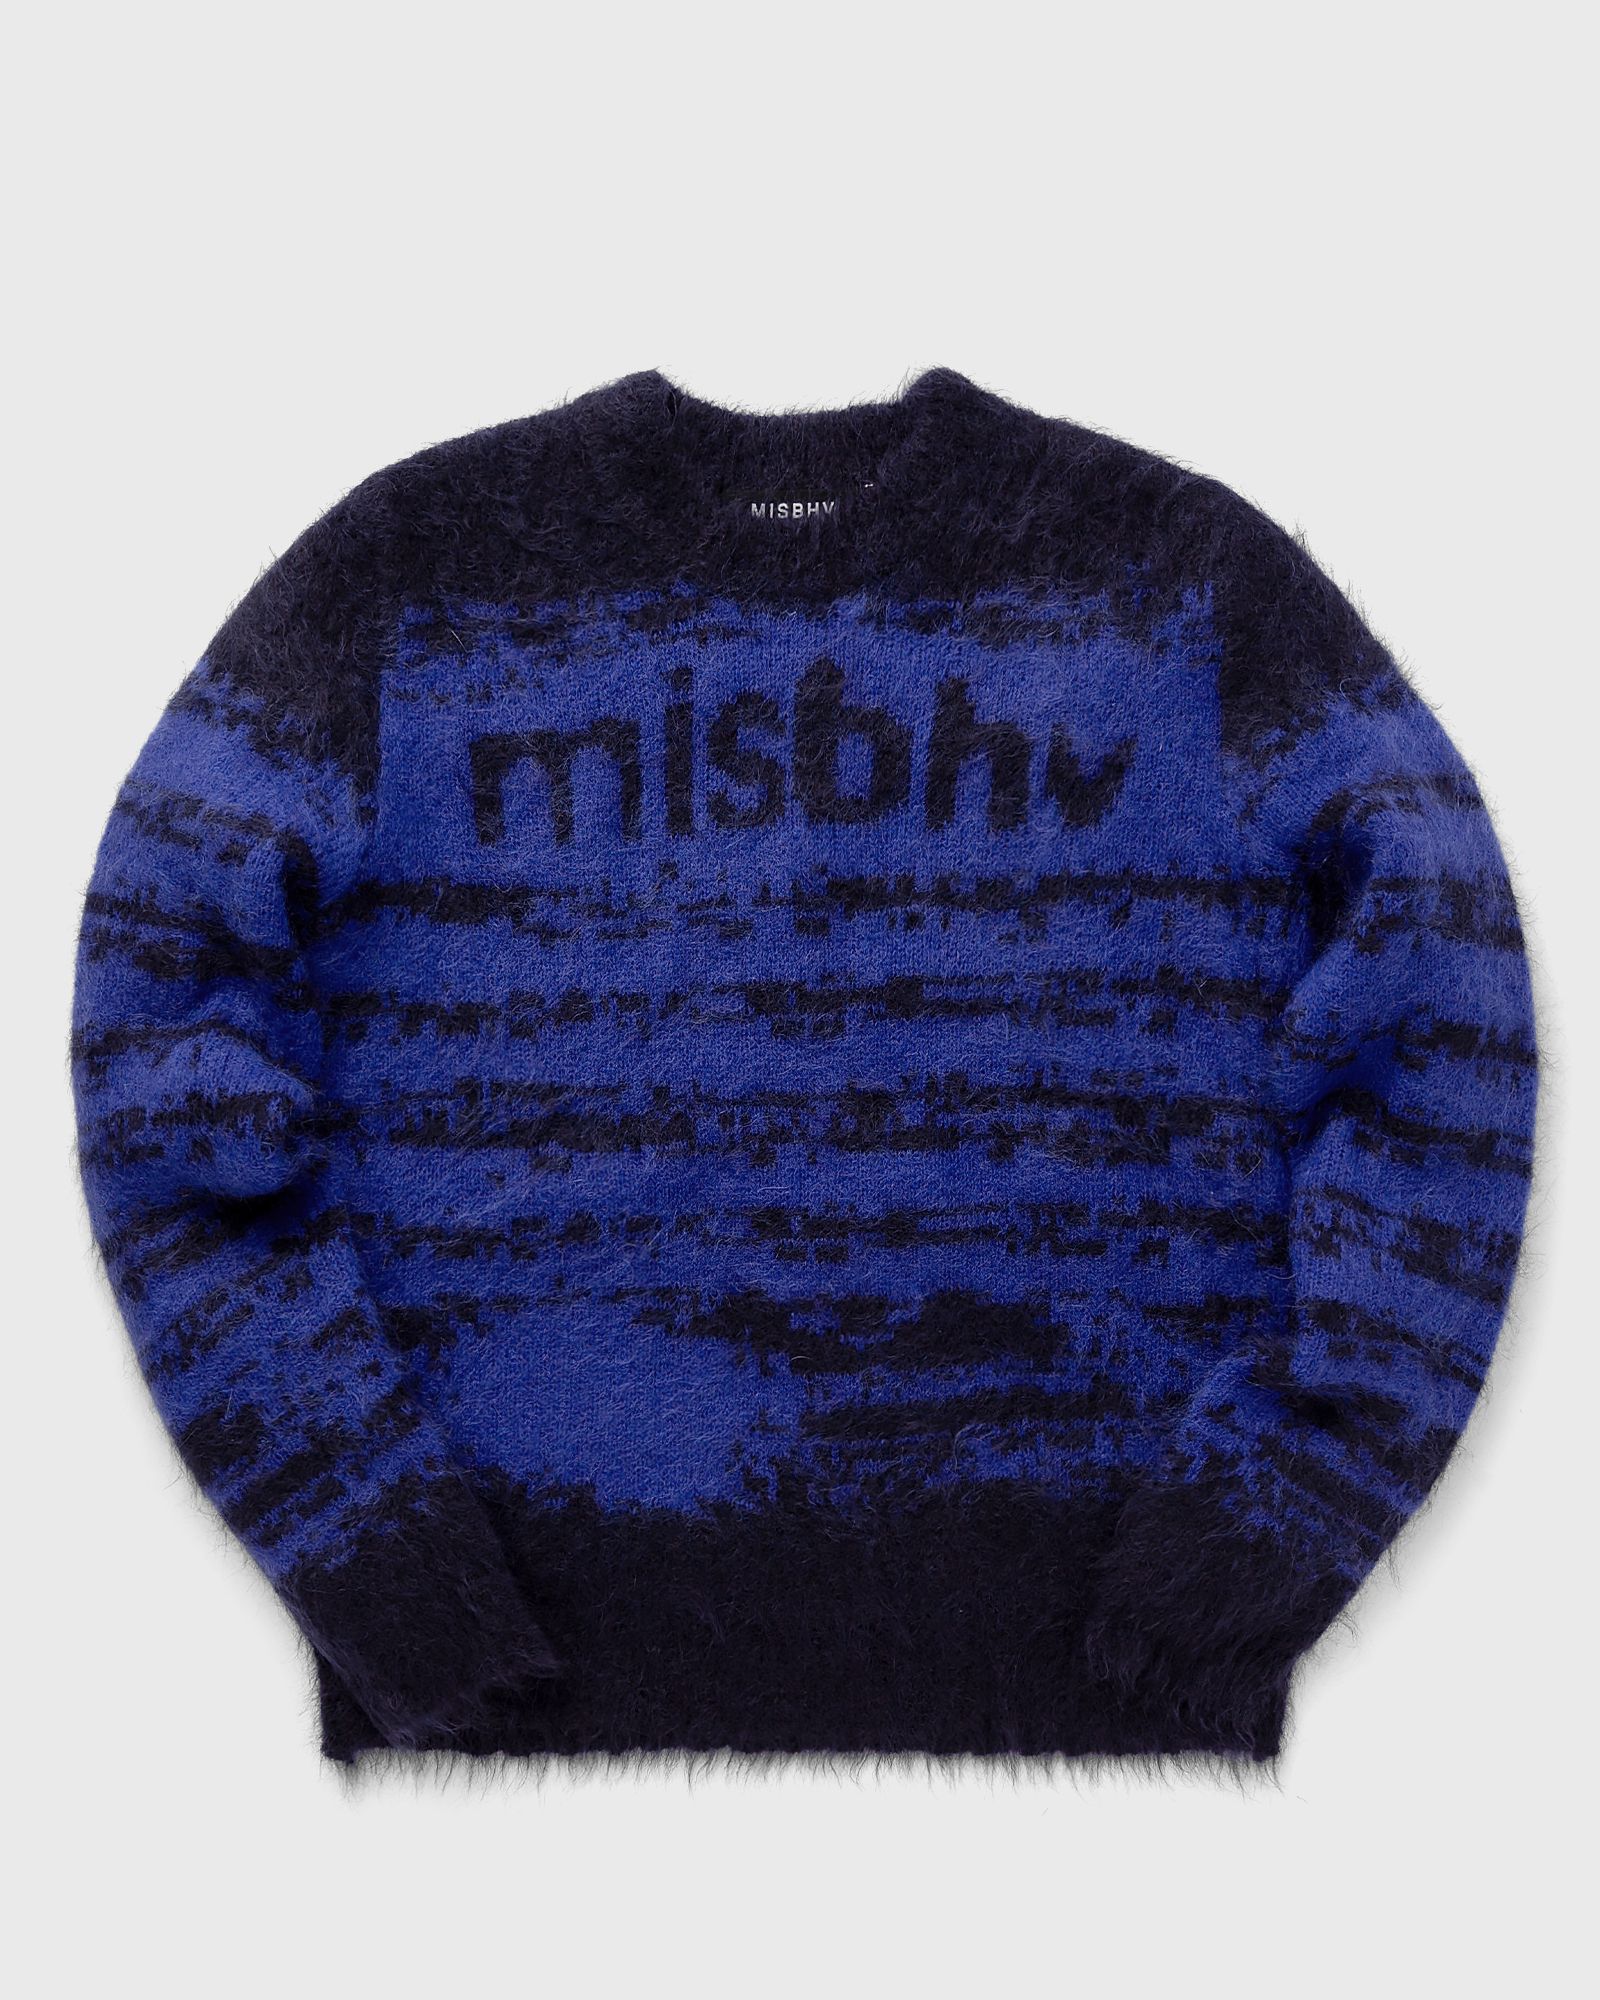 MISBHV - brushed mohair knit men pullovers black|blue in größe:xl